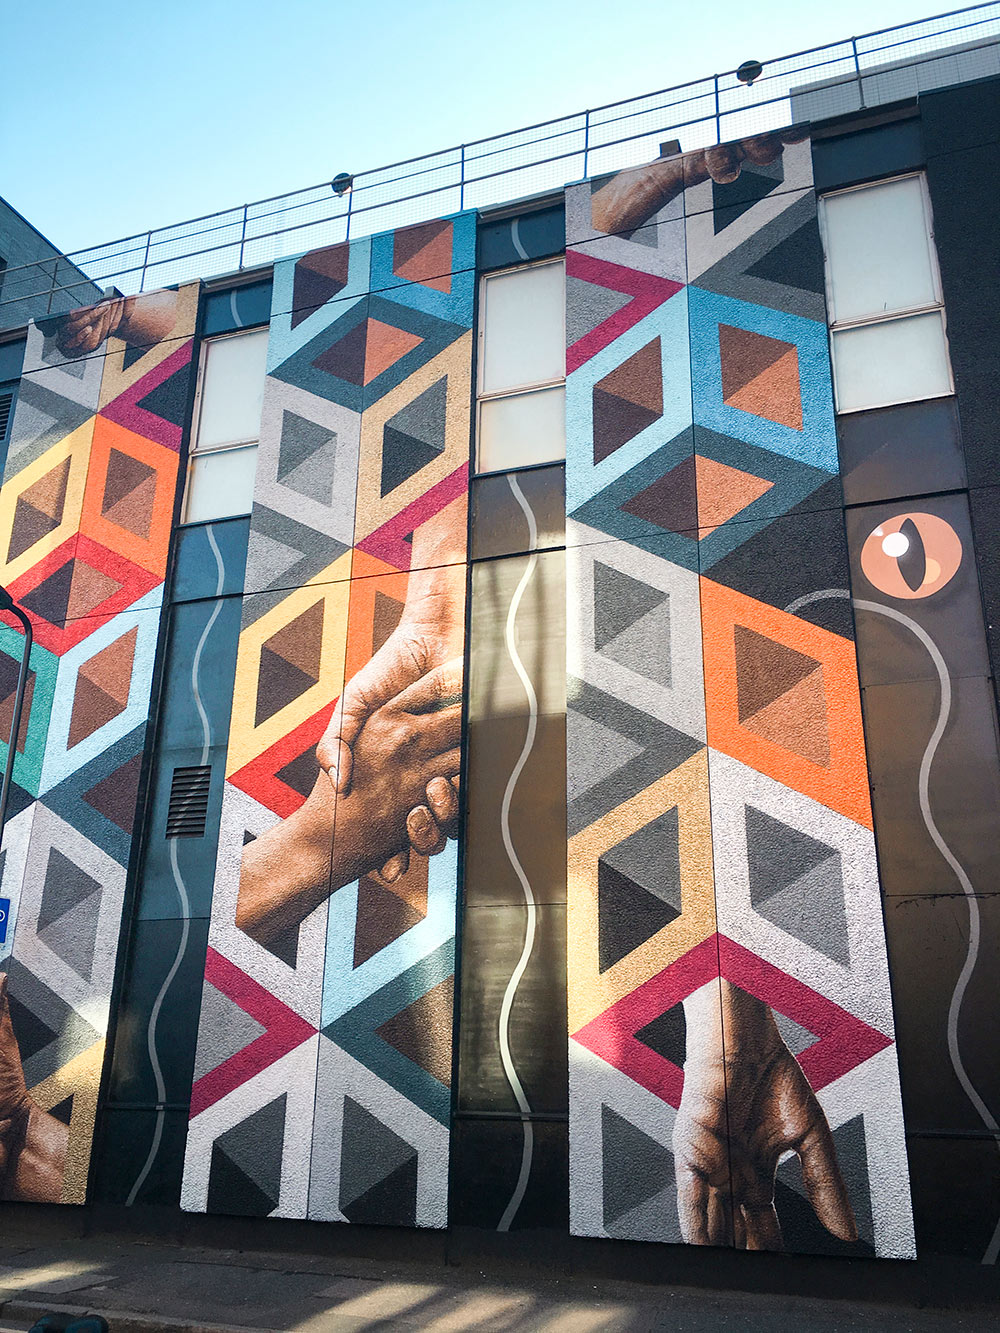 Visites guidées à Londres, Murale Connectivity, tour de Street art dans Shoreditch, Londres, Angleterre / Connectivity Mural, Shoreditch Street art Tour, London, England, UK.